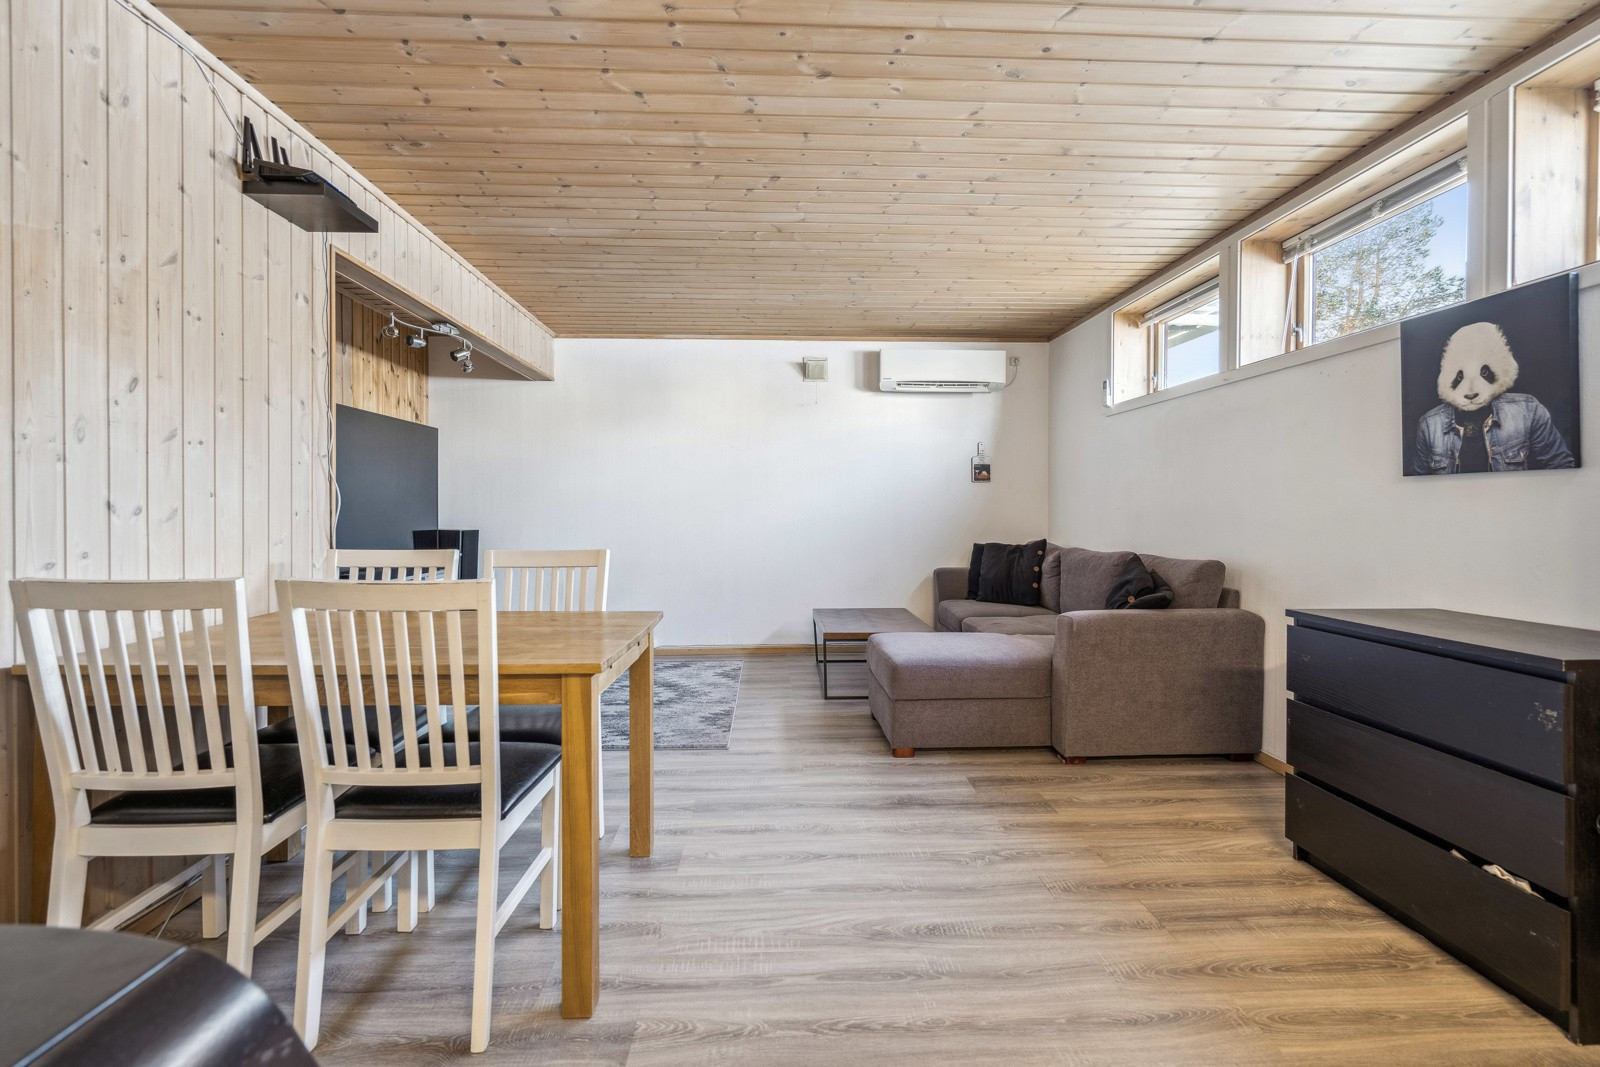 Åpen stue- og kjøkkenløsning med plass til både stuemøblement og spisestue i tilknytning til kjøkken.